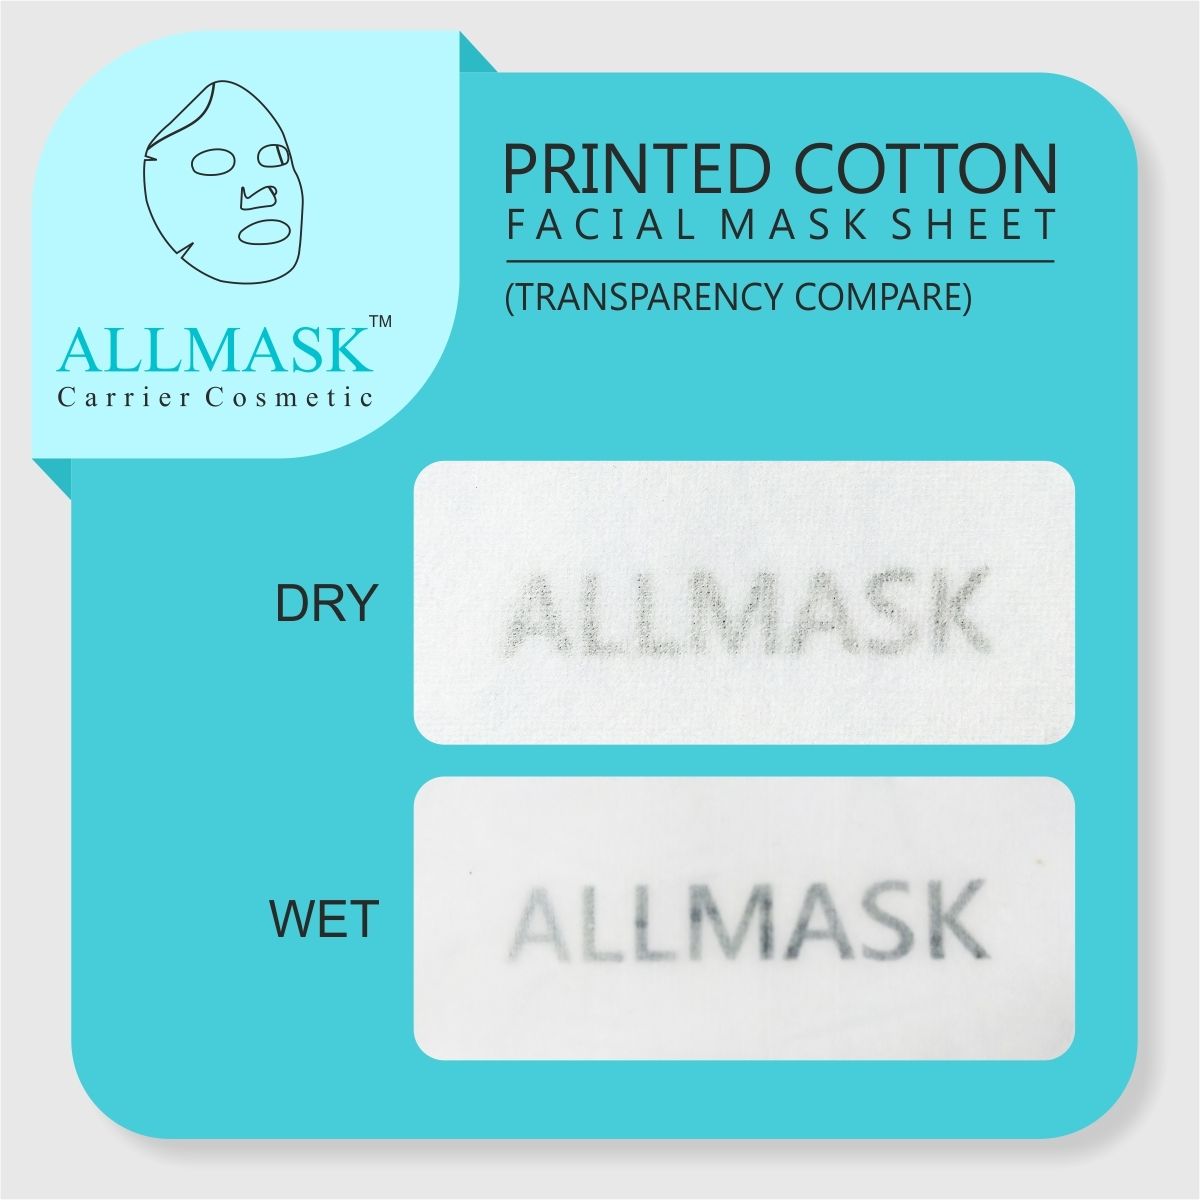 Cotton Cat Printed Facial Mask Sheet - 100% Original - ODM/OEM Customization Available